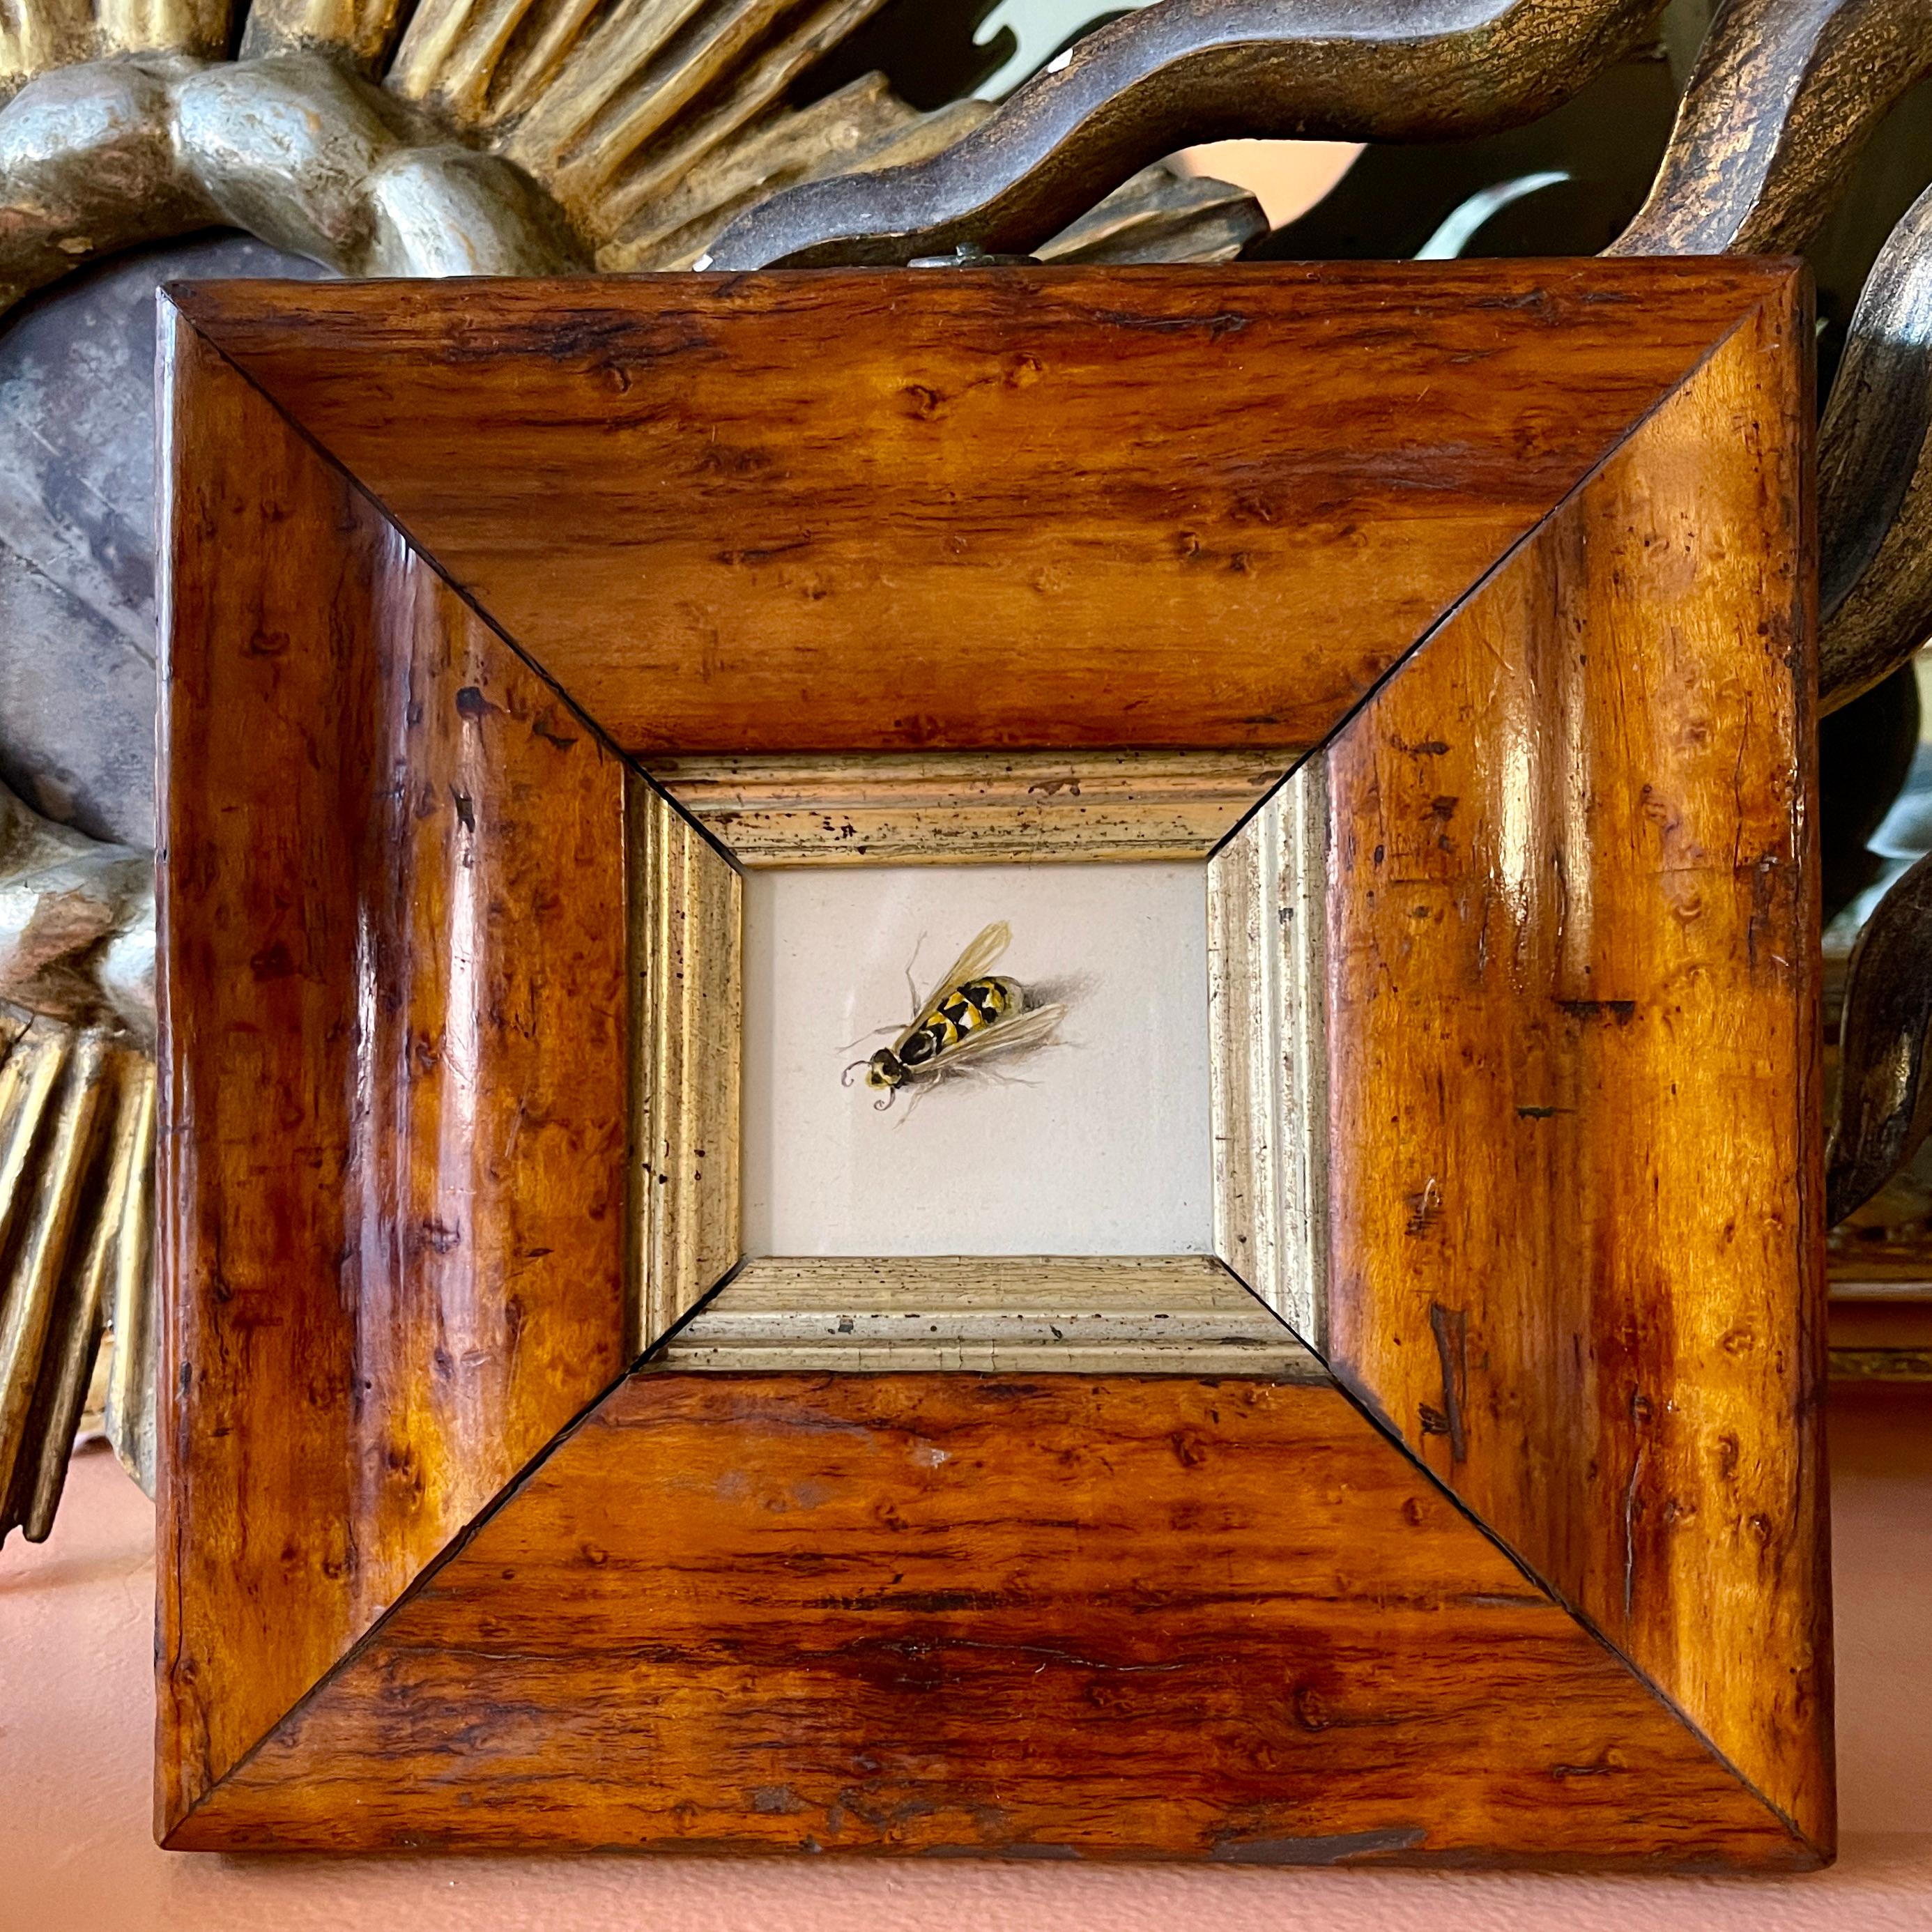 Ein Original-Aquarell der britischen Schule aus der Regency-Periode, das eine Wespe in einem Obstholzrahmen aus der georgianischen Periode darstellt  ca. 1825-1835.

Diese Aquarelle wurden hauptsächlich von jungen Mädchen aus aristokratischen